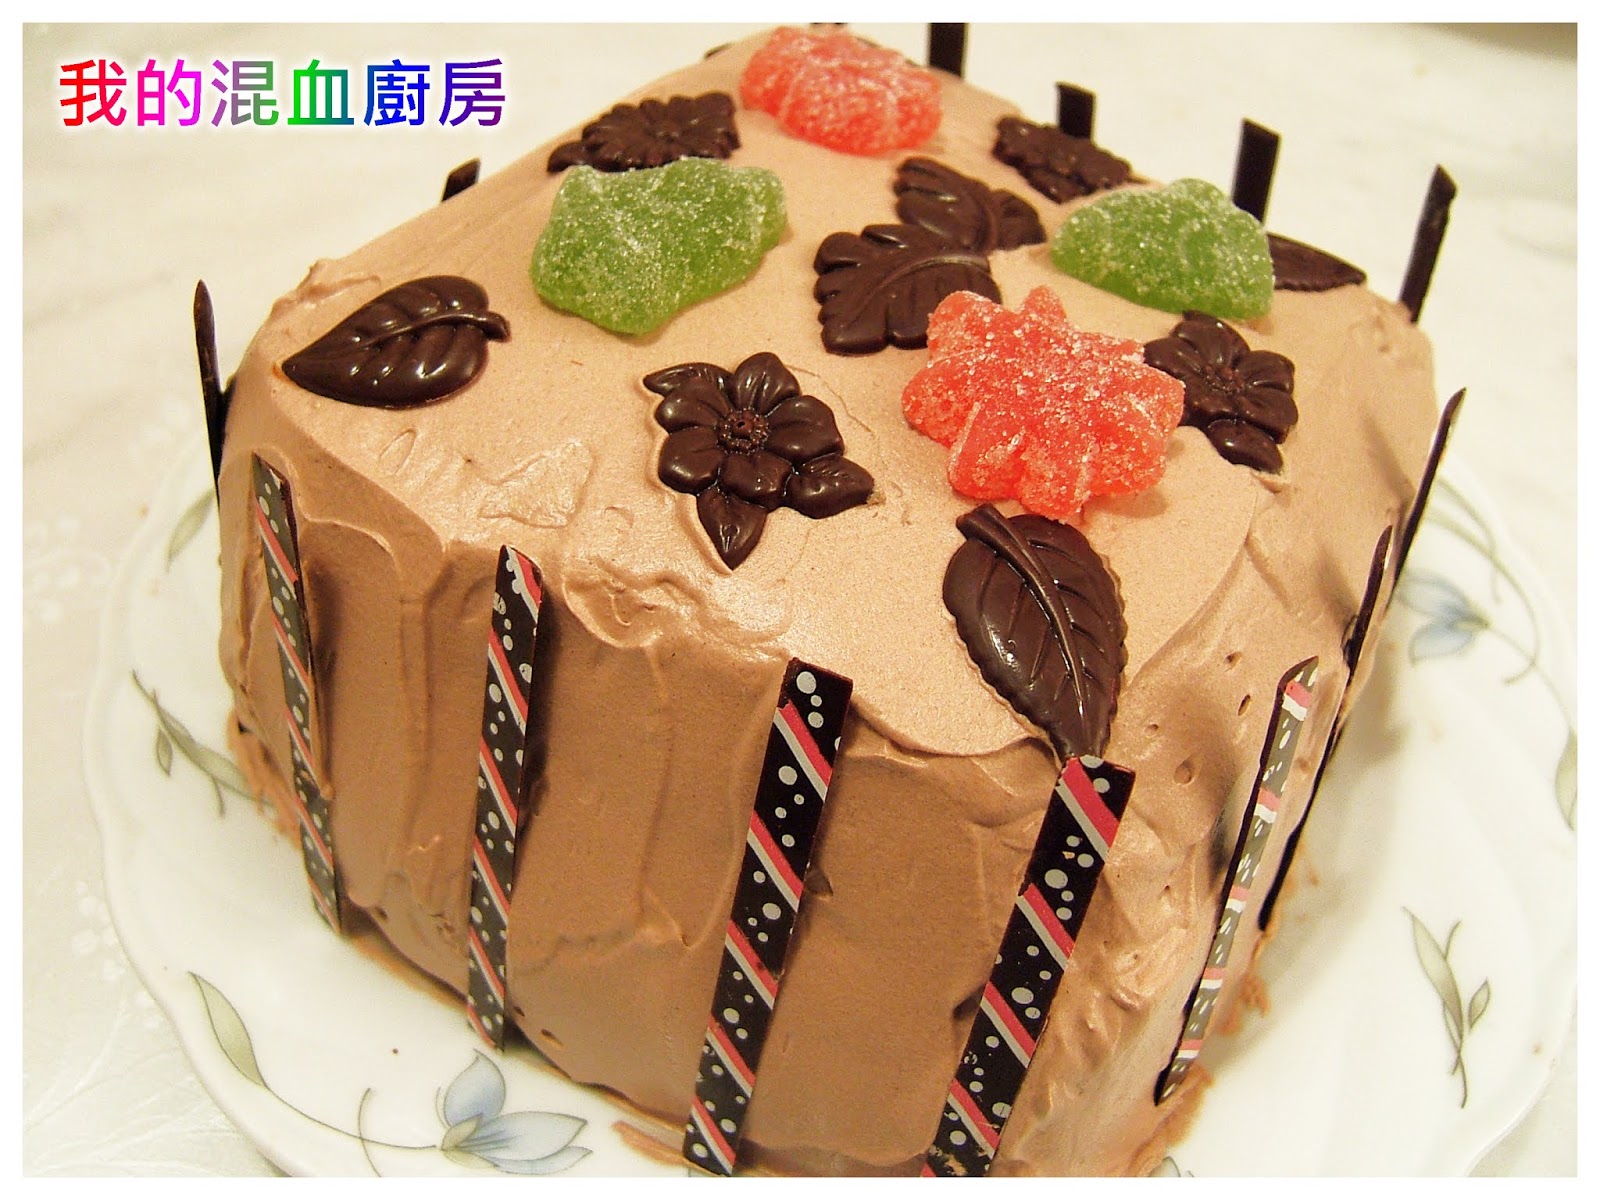 巧克力蛋糕装饰用草莓和巧克力卷毛 库存照片. 图片 包括有 美食, 酥皮点心, 生日, 可口, 巧克力 - 132880672